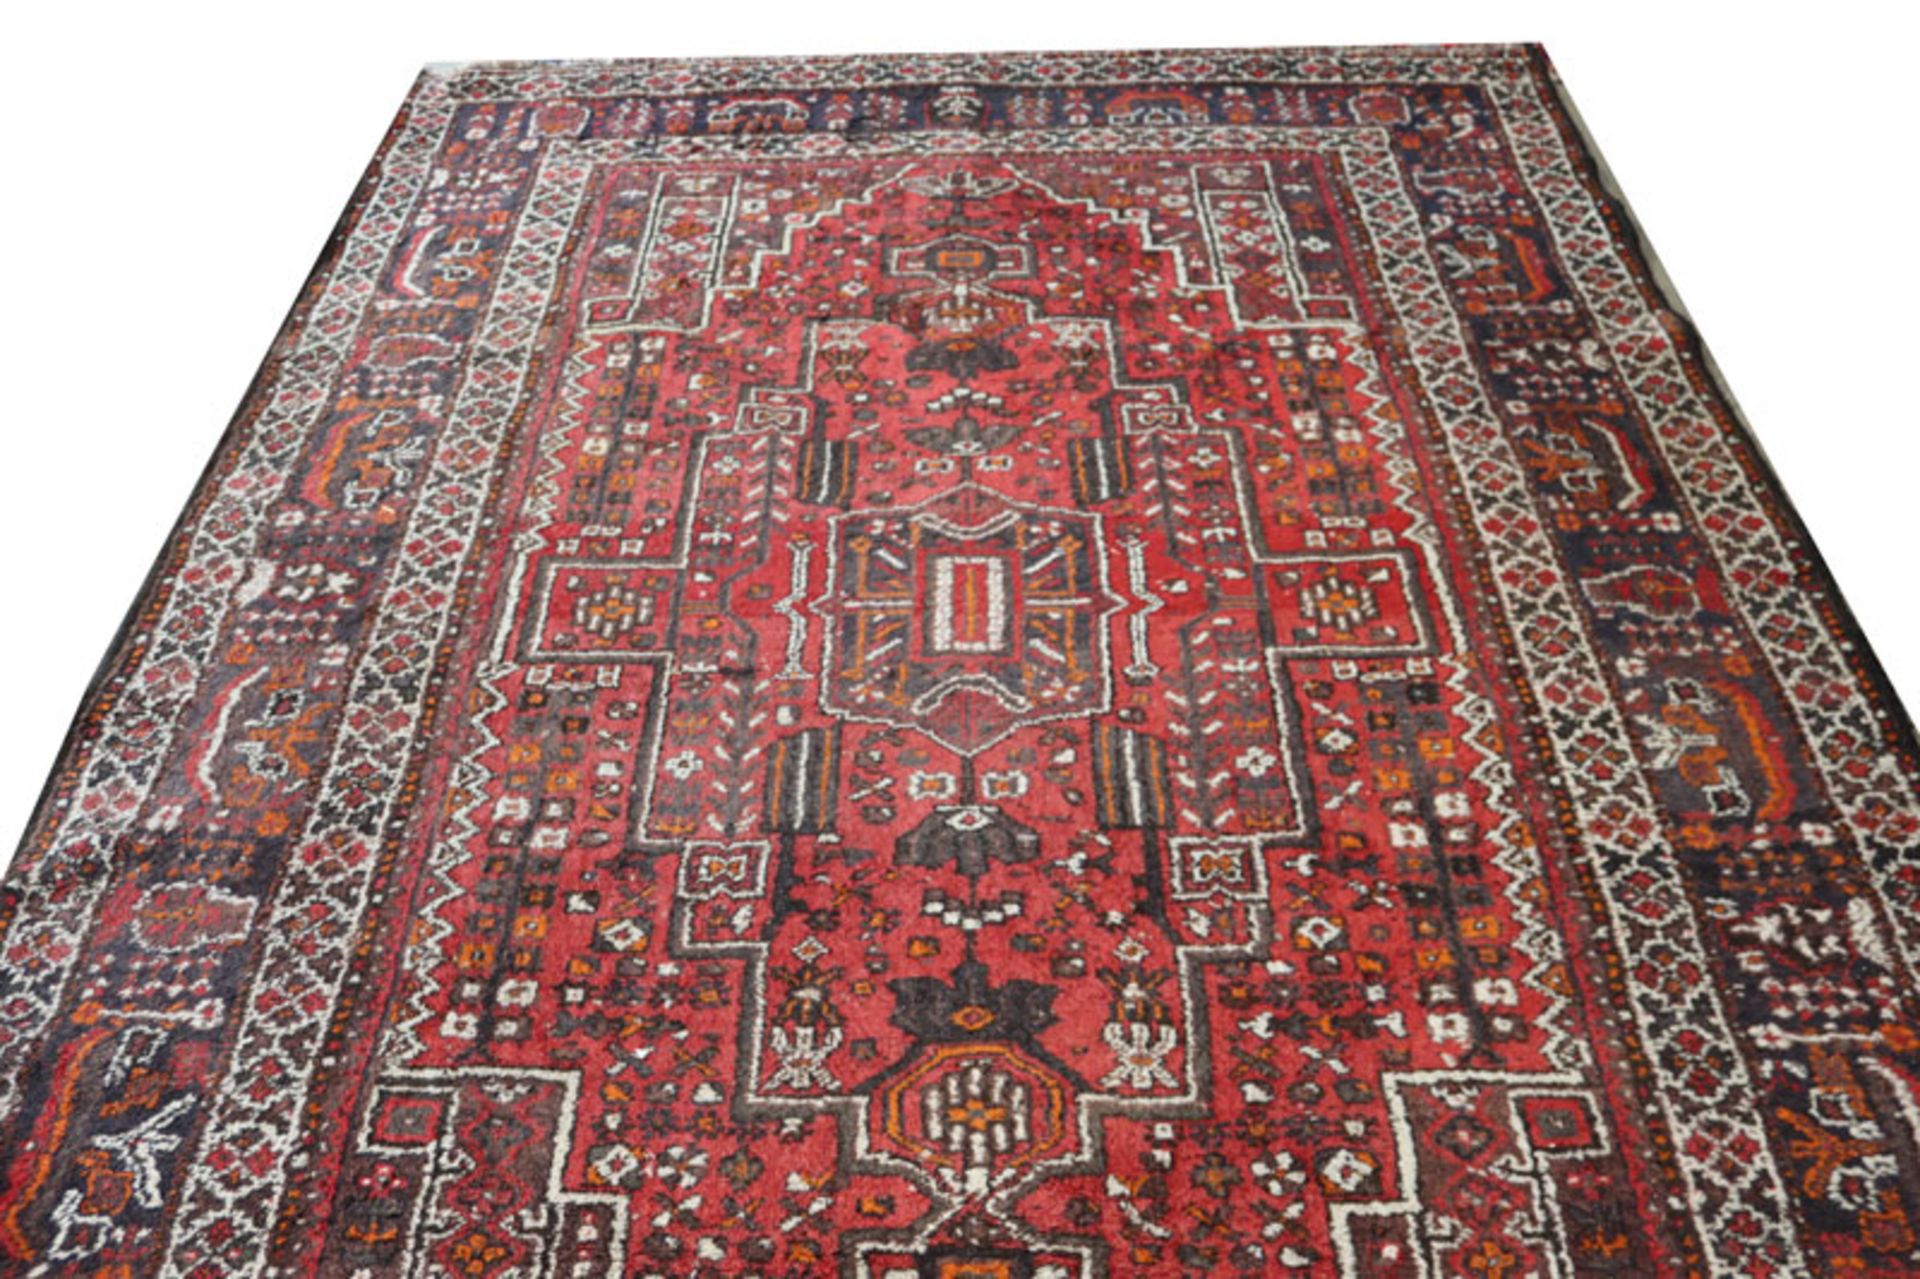 Teppich, Bachtiari, rot/braun/beige, starke Gebrauchsspuren, 310 cm x 210 cm